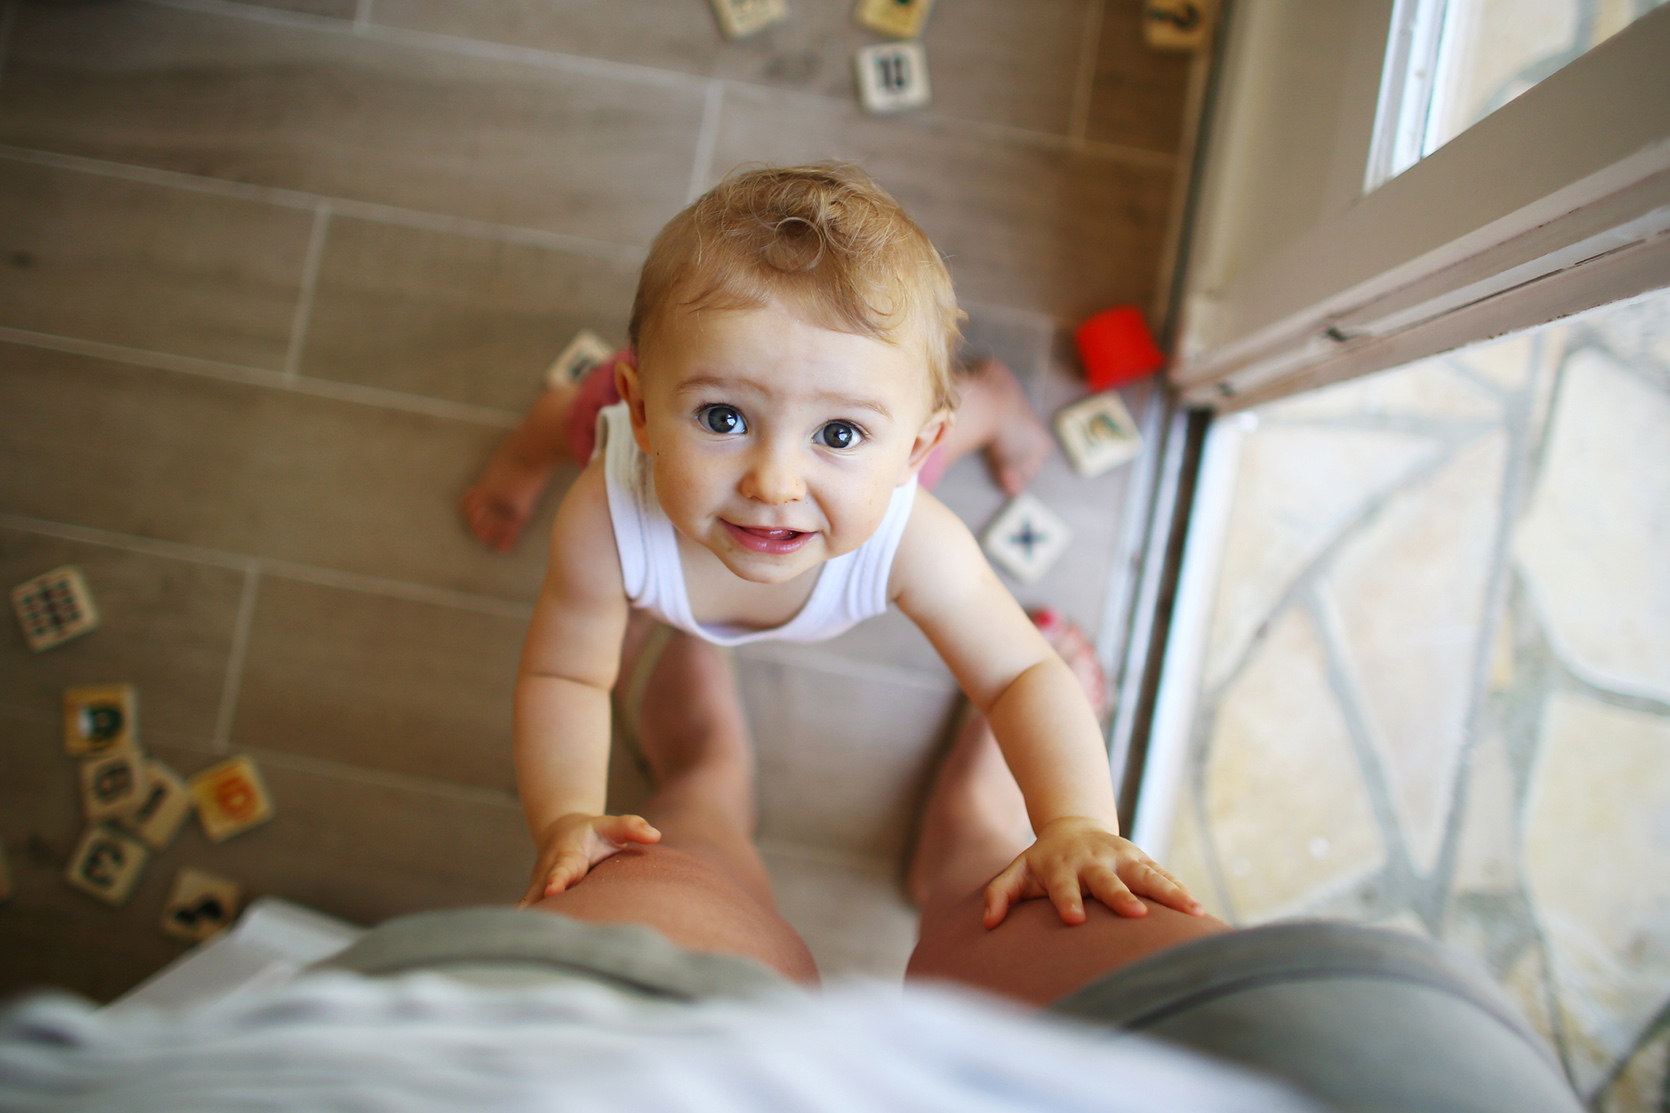 Co umie już 2 miesięczne dziecko?/fot. Getty Images